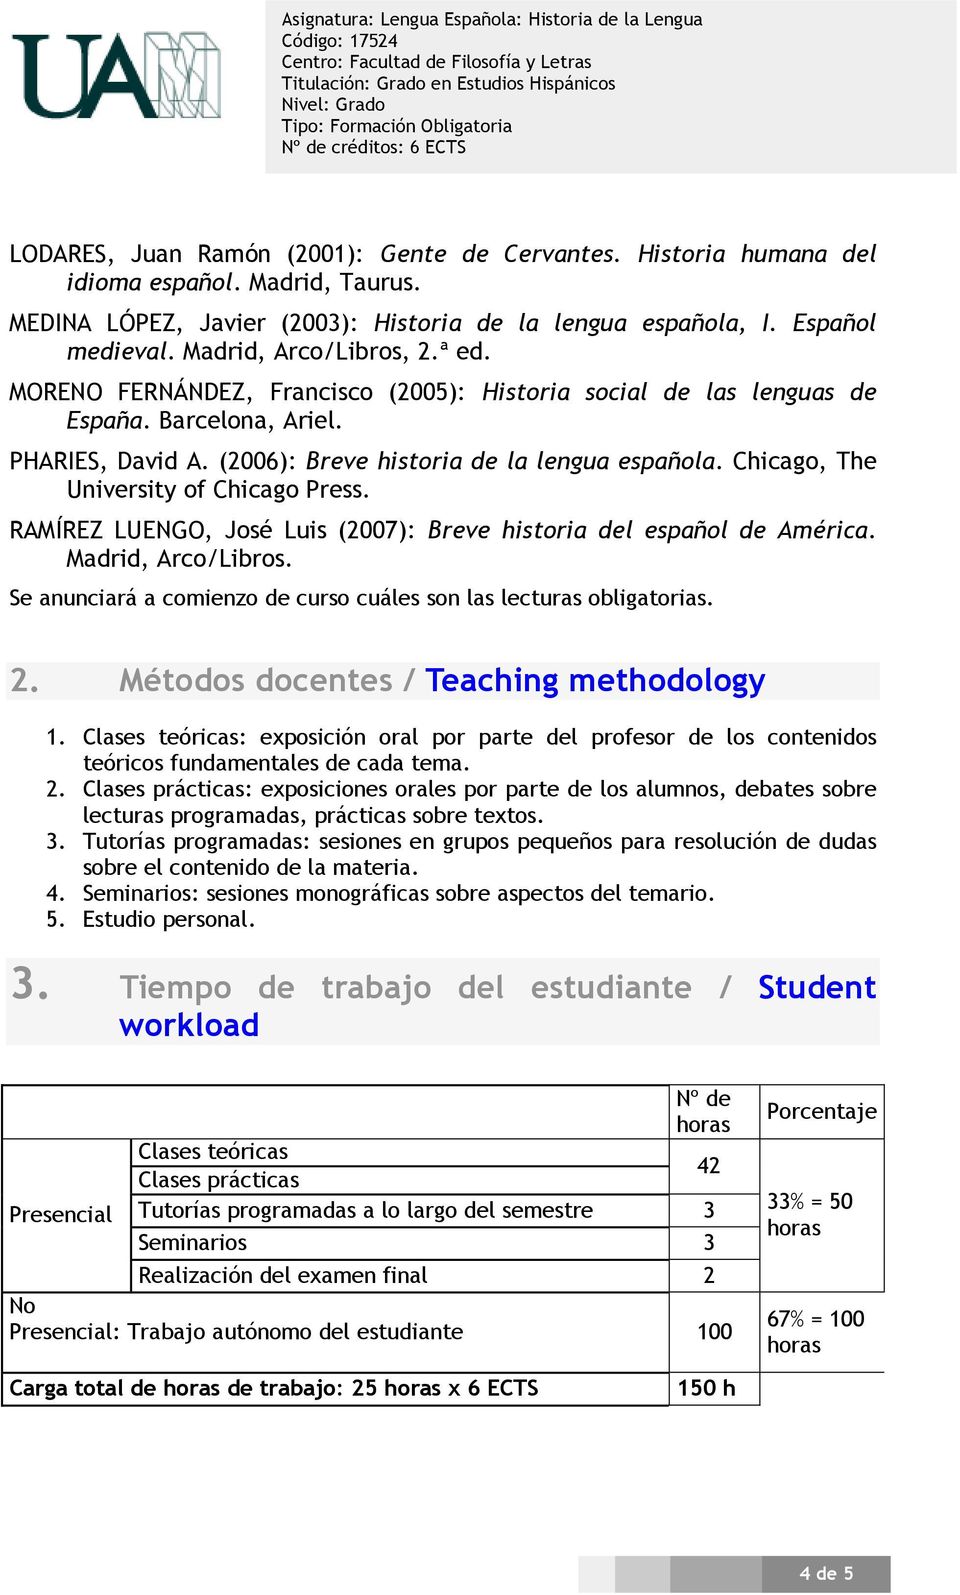 Chicago, The University of Chicago Press. RAMÍREZ LUENGO, José Luis (2007): Breve historia del español de América. Madrid, Arco/Libros.